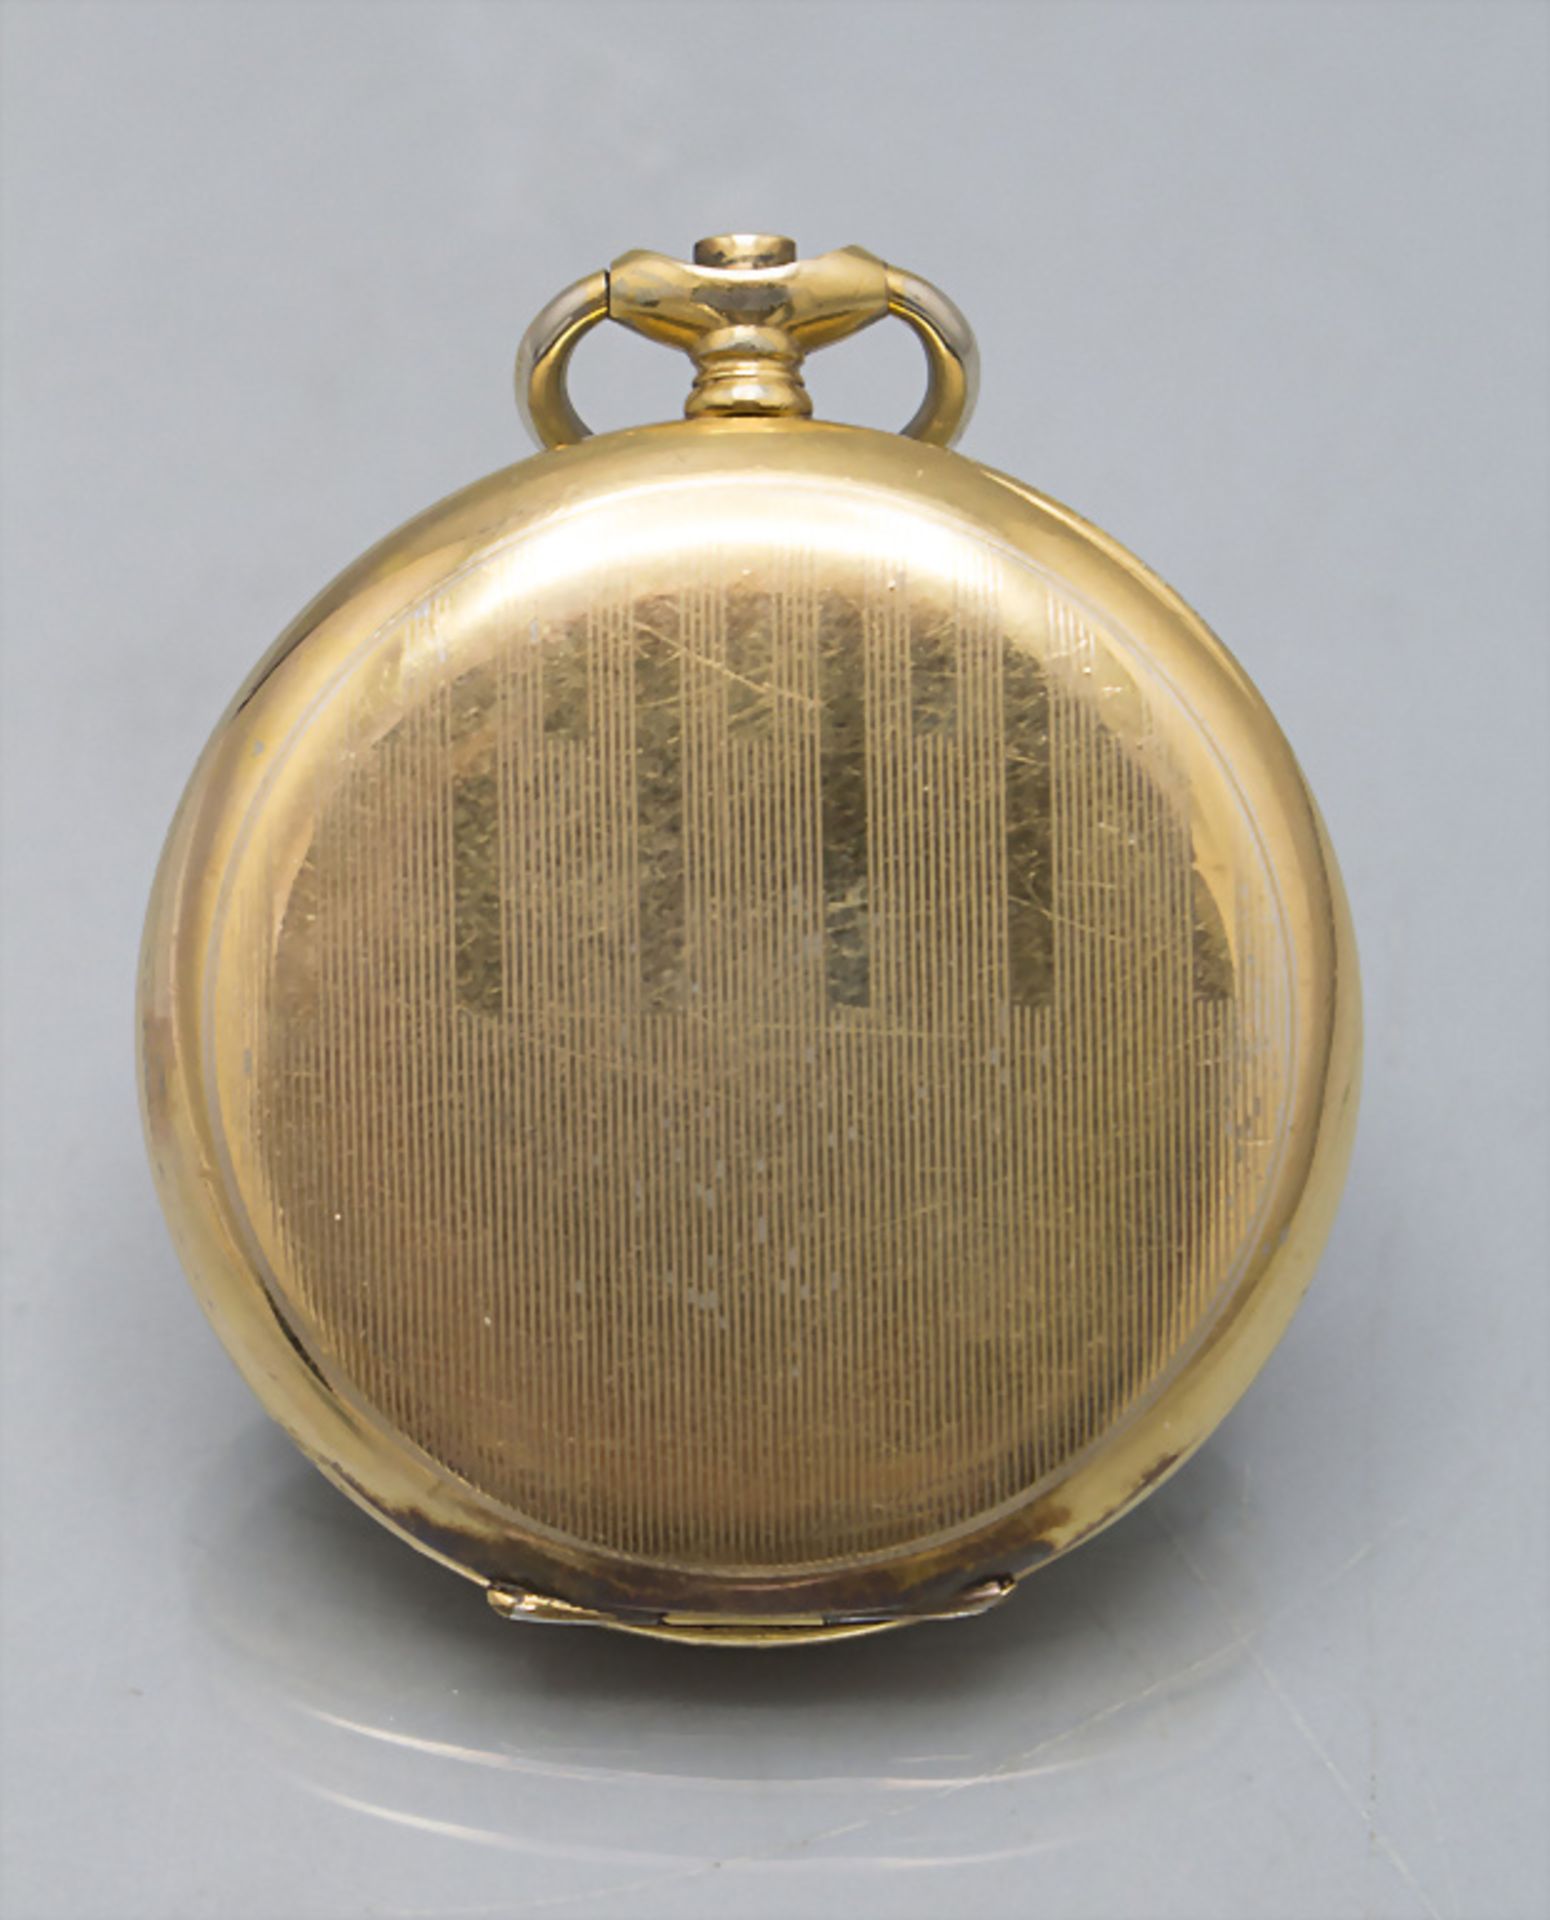 Taschenuhr mit 14 Kt Gold Kette / A pocket watch with a 14 ct gold chain, Zenith, Swiss, um 1950 - Image 3 of 6